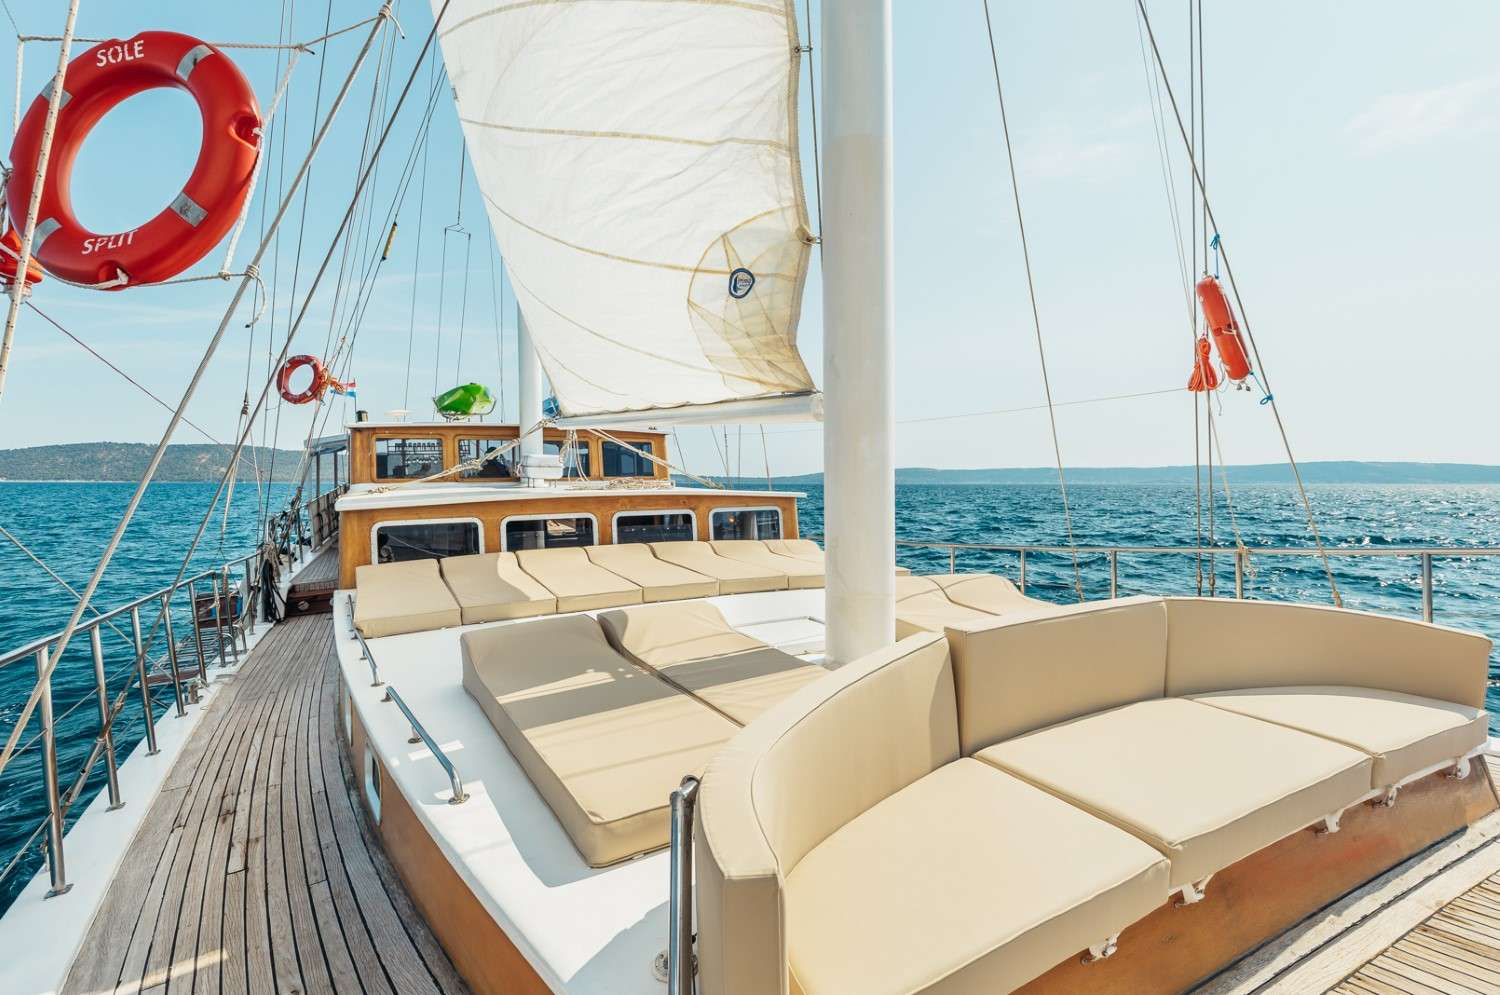 Sole  - Yacht Charter Ploče & Boat hire in Croatia 5